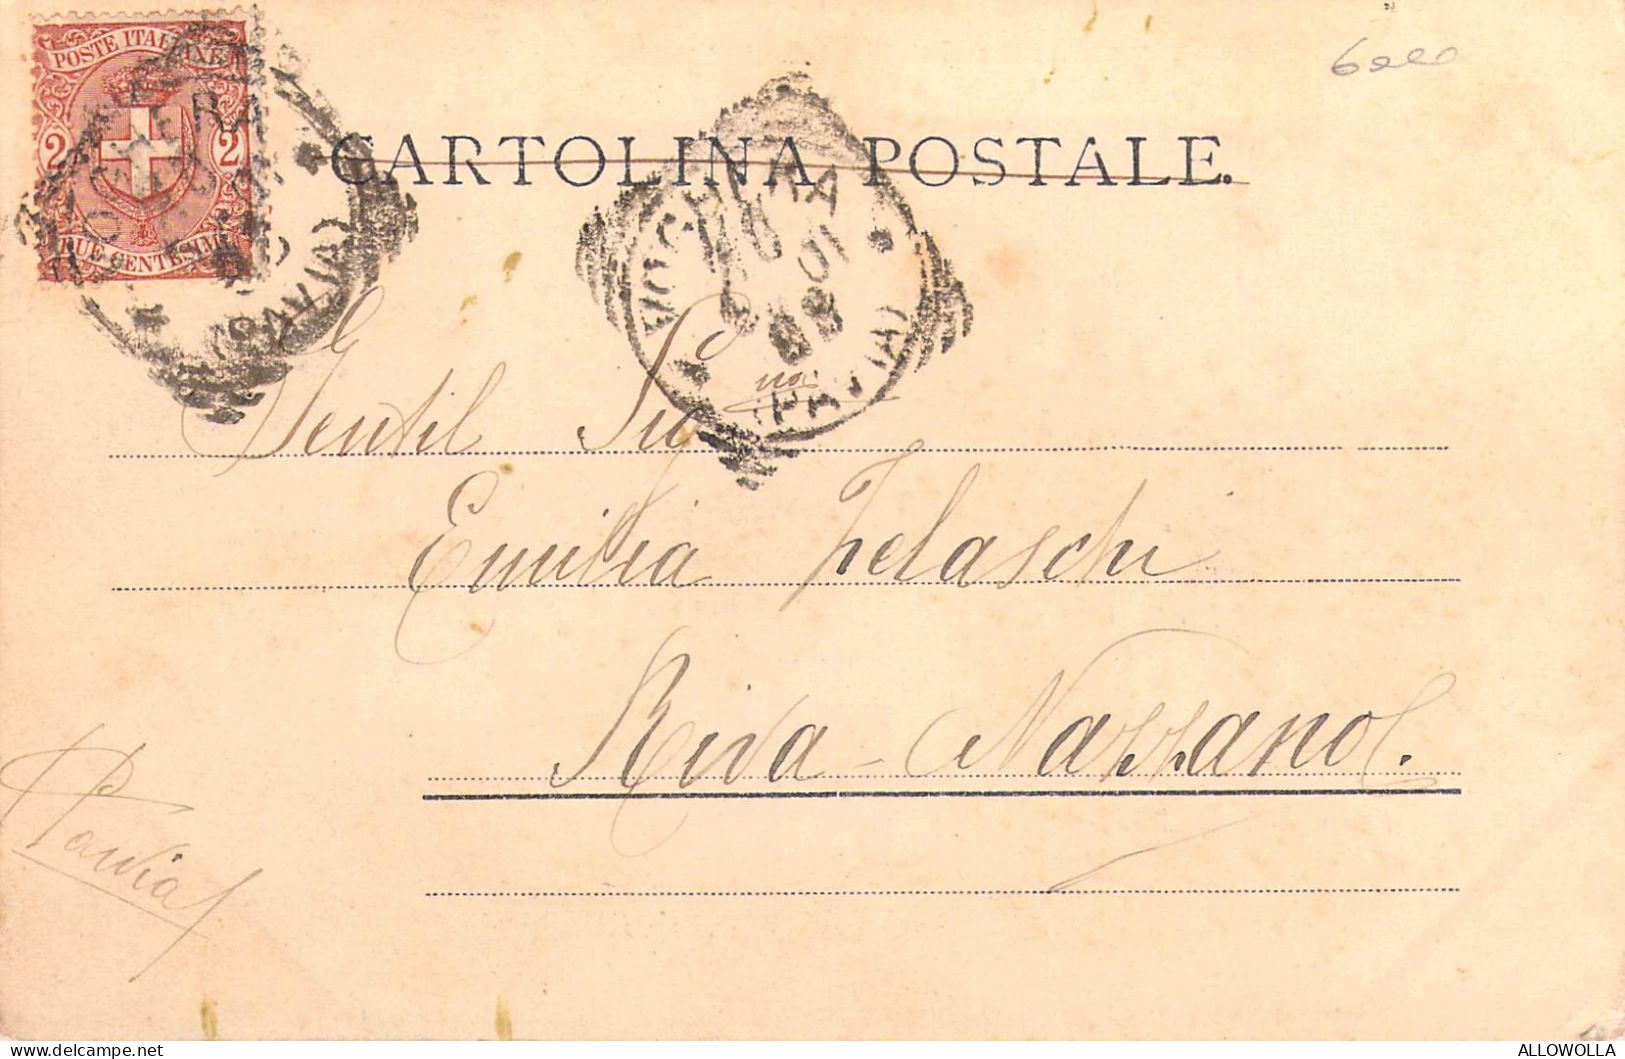 24239 " RICORDO DI TORINO-GRAN MADRE DI DIO E MONTE DEI CAPPUCCINI " PANORAMA-VERA FOTO-CART. POST. SPED. 1901 - Kerken